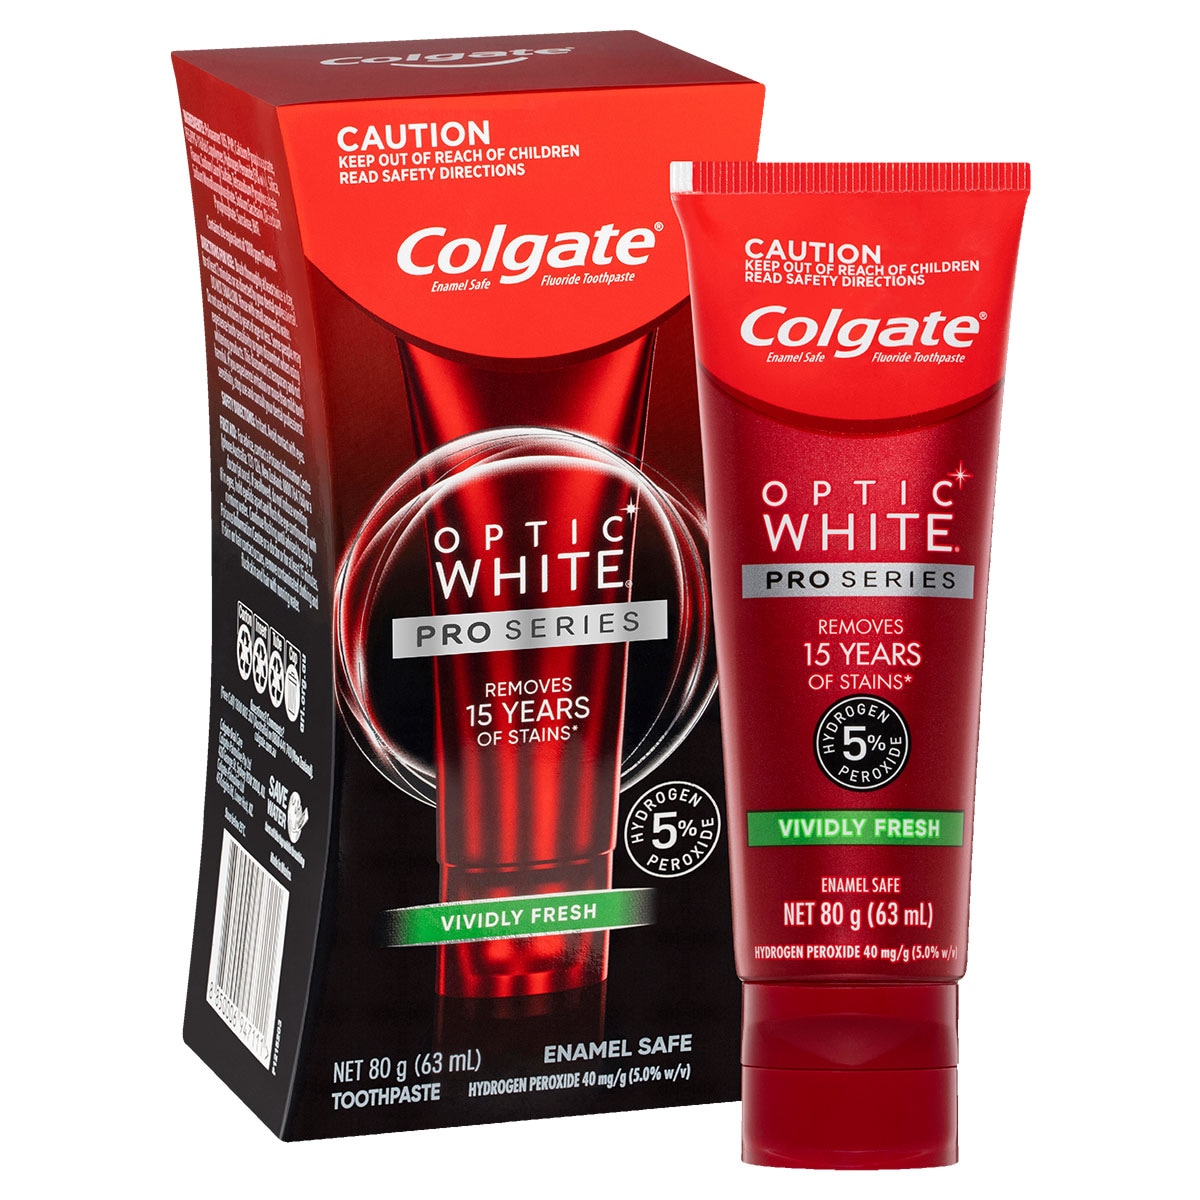 Colgate Optic White Pro Series Vividly Fresh Whitening Toothpaste 80g